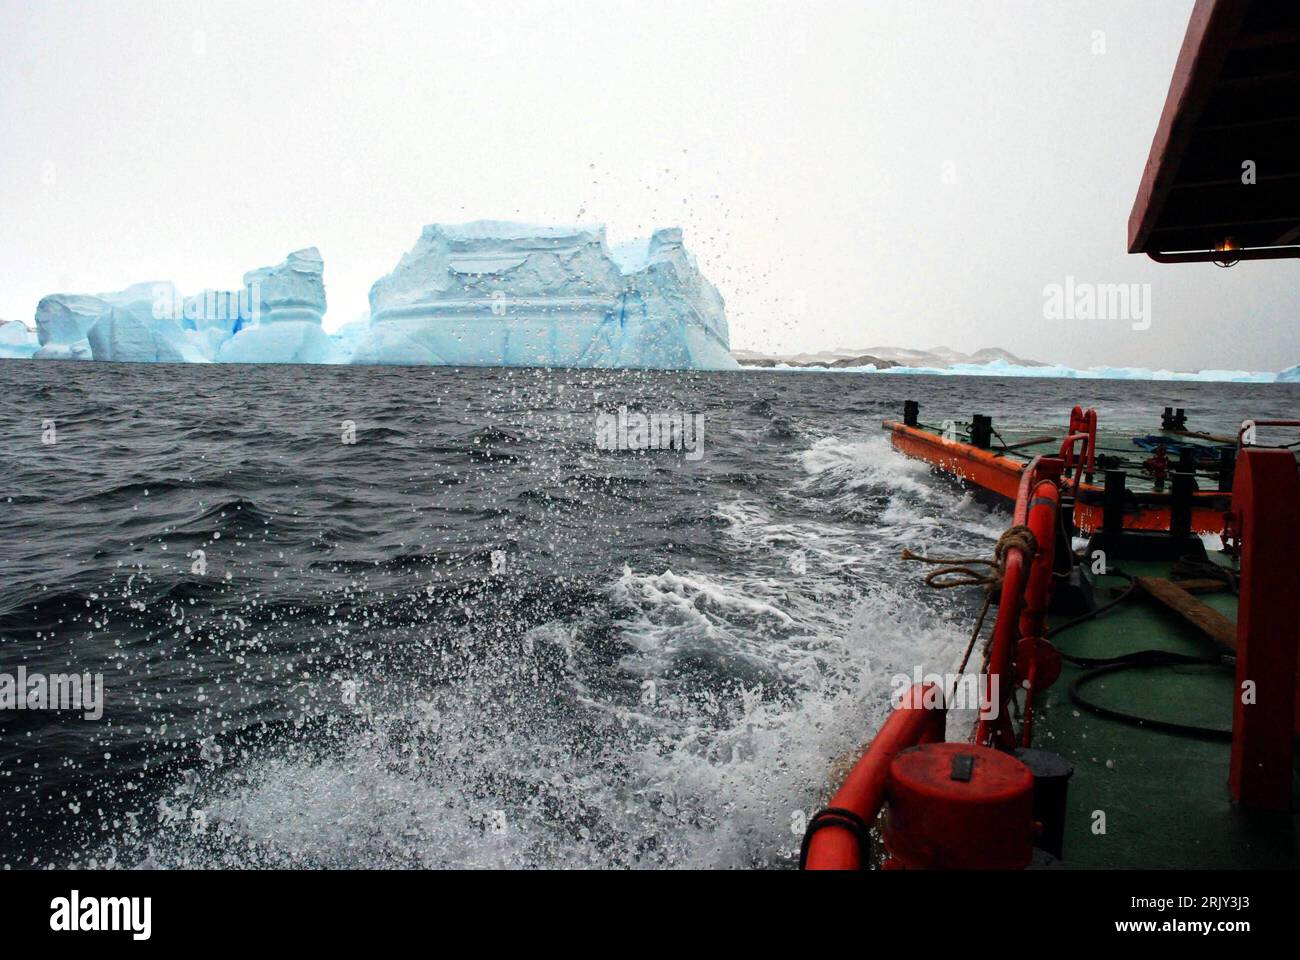 Beiboot des chinesischen Wissenschaftsschiffes - Xuelong - mit Ölfässern in der Antarktis PUBLICATIONxNOTxINxCHN   Dinghy the Chinese Science ship XUELONG with Ölfässern in the Antarctica PUBLICATIONxNOTxINxCHN Stock Photo